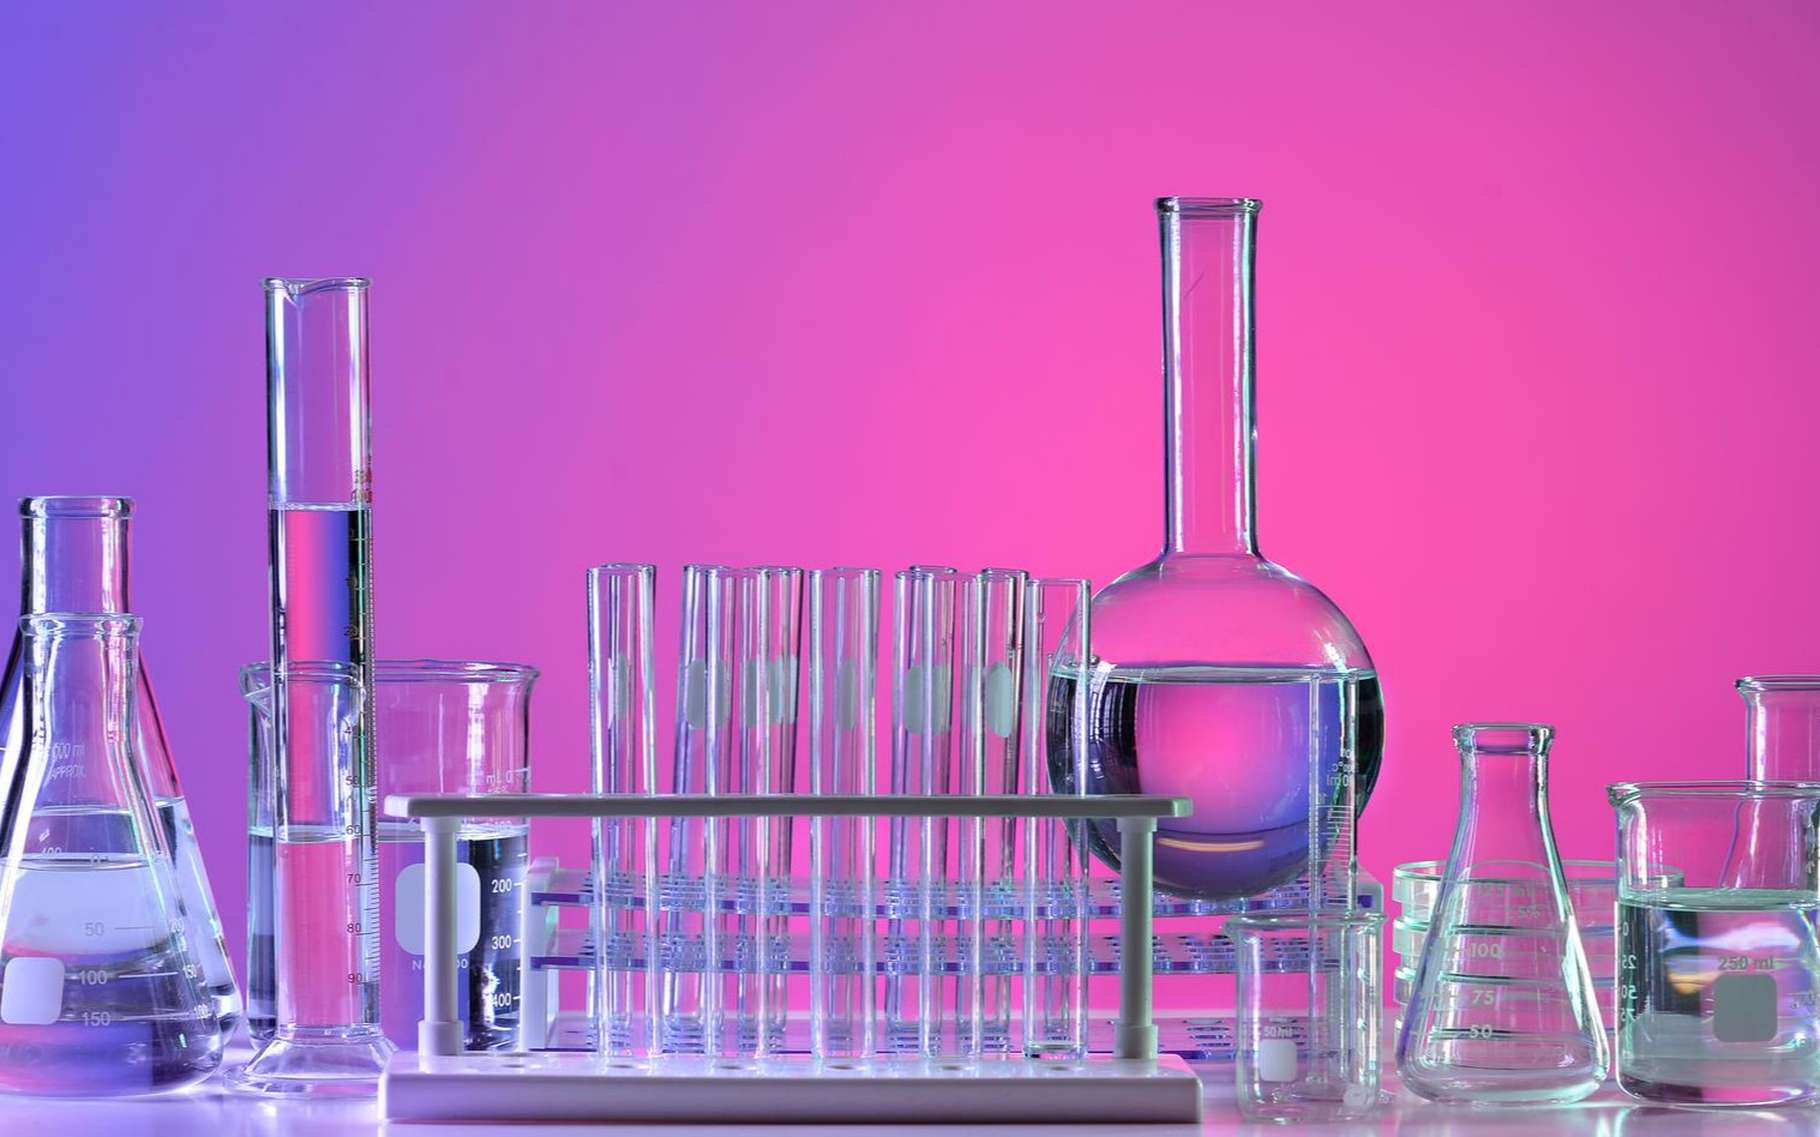 La verrerie de laboratoire fait appel à différents types de verre selon les usages. © R. Gino Santa Maria, Shutterstock